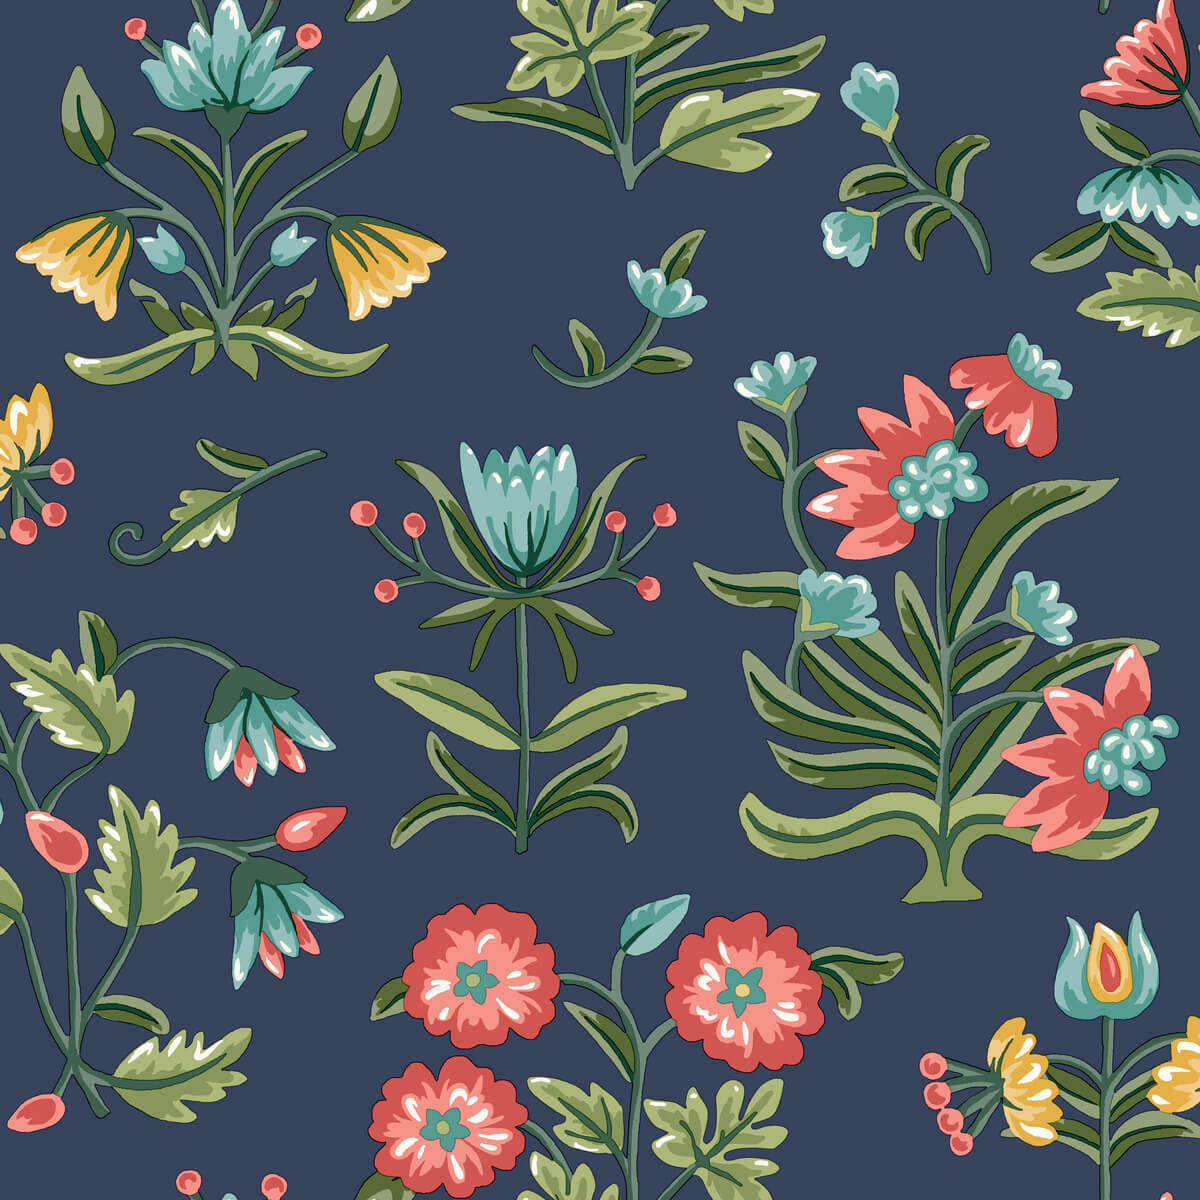 Erin & Ben Co. Heirloom Floral Peel & Stick Wallpaper - Navy Blue